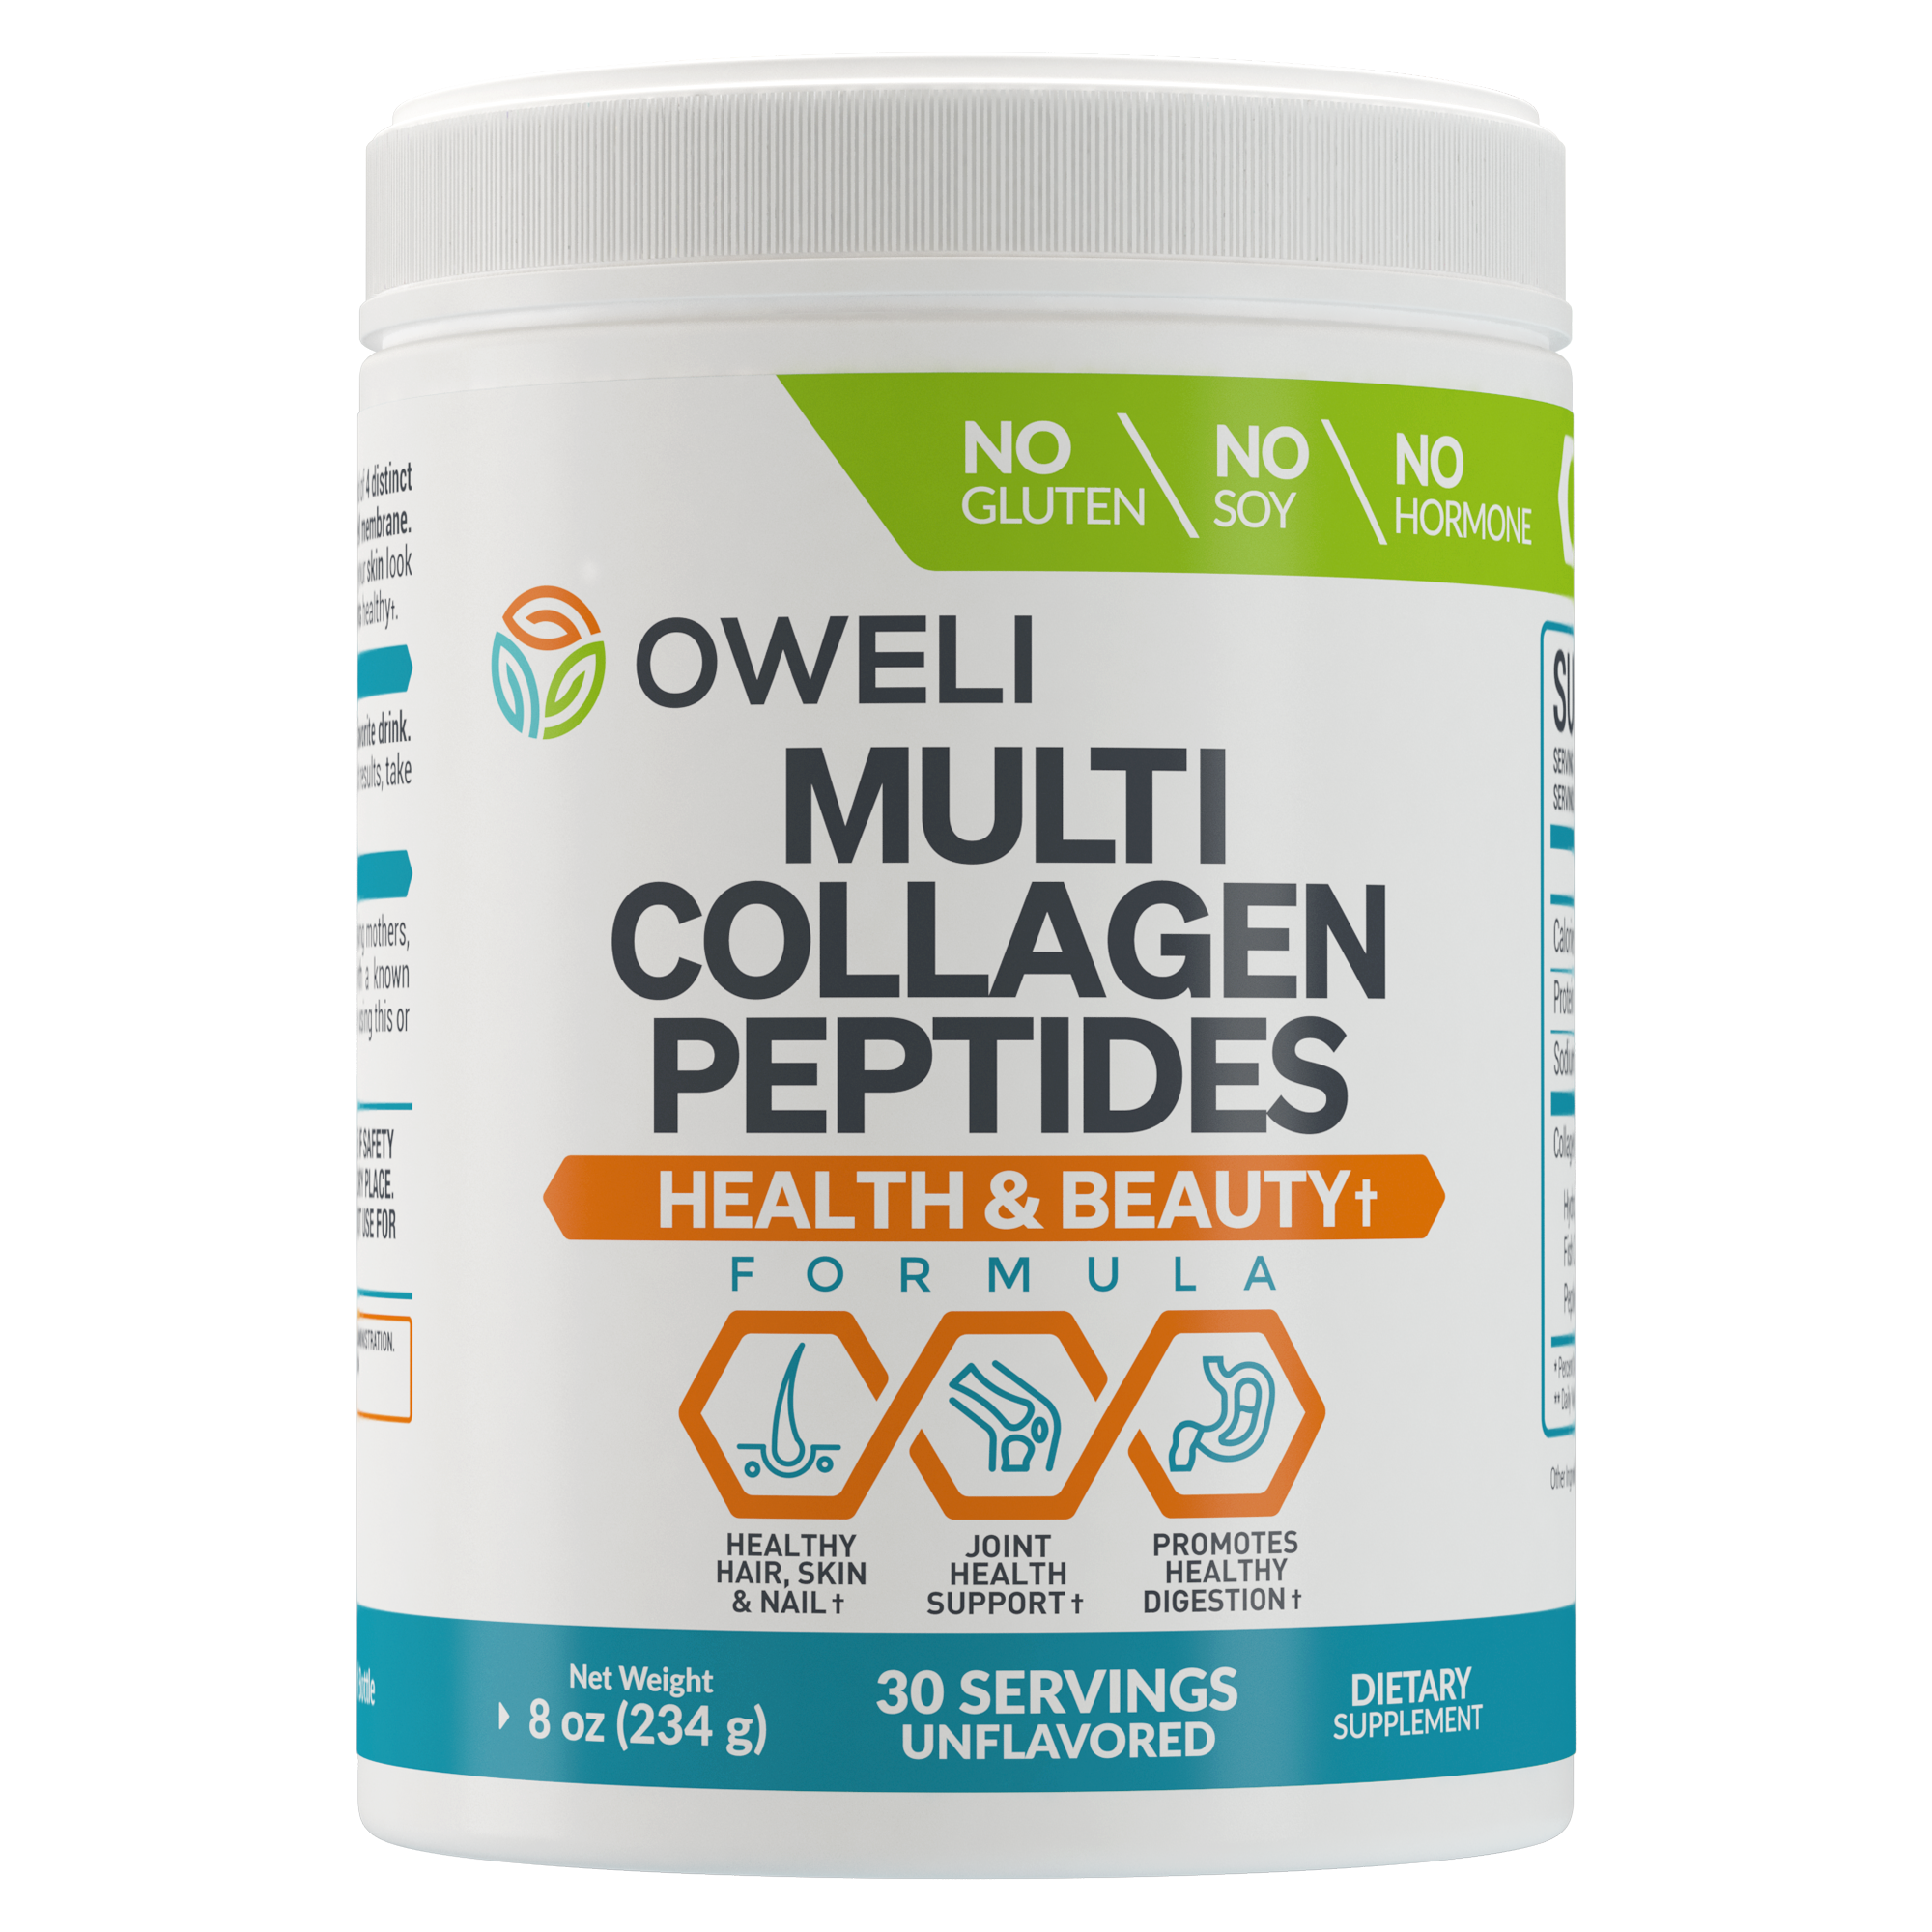 Oweli Multi-collagen